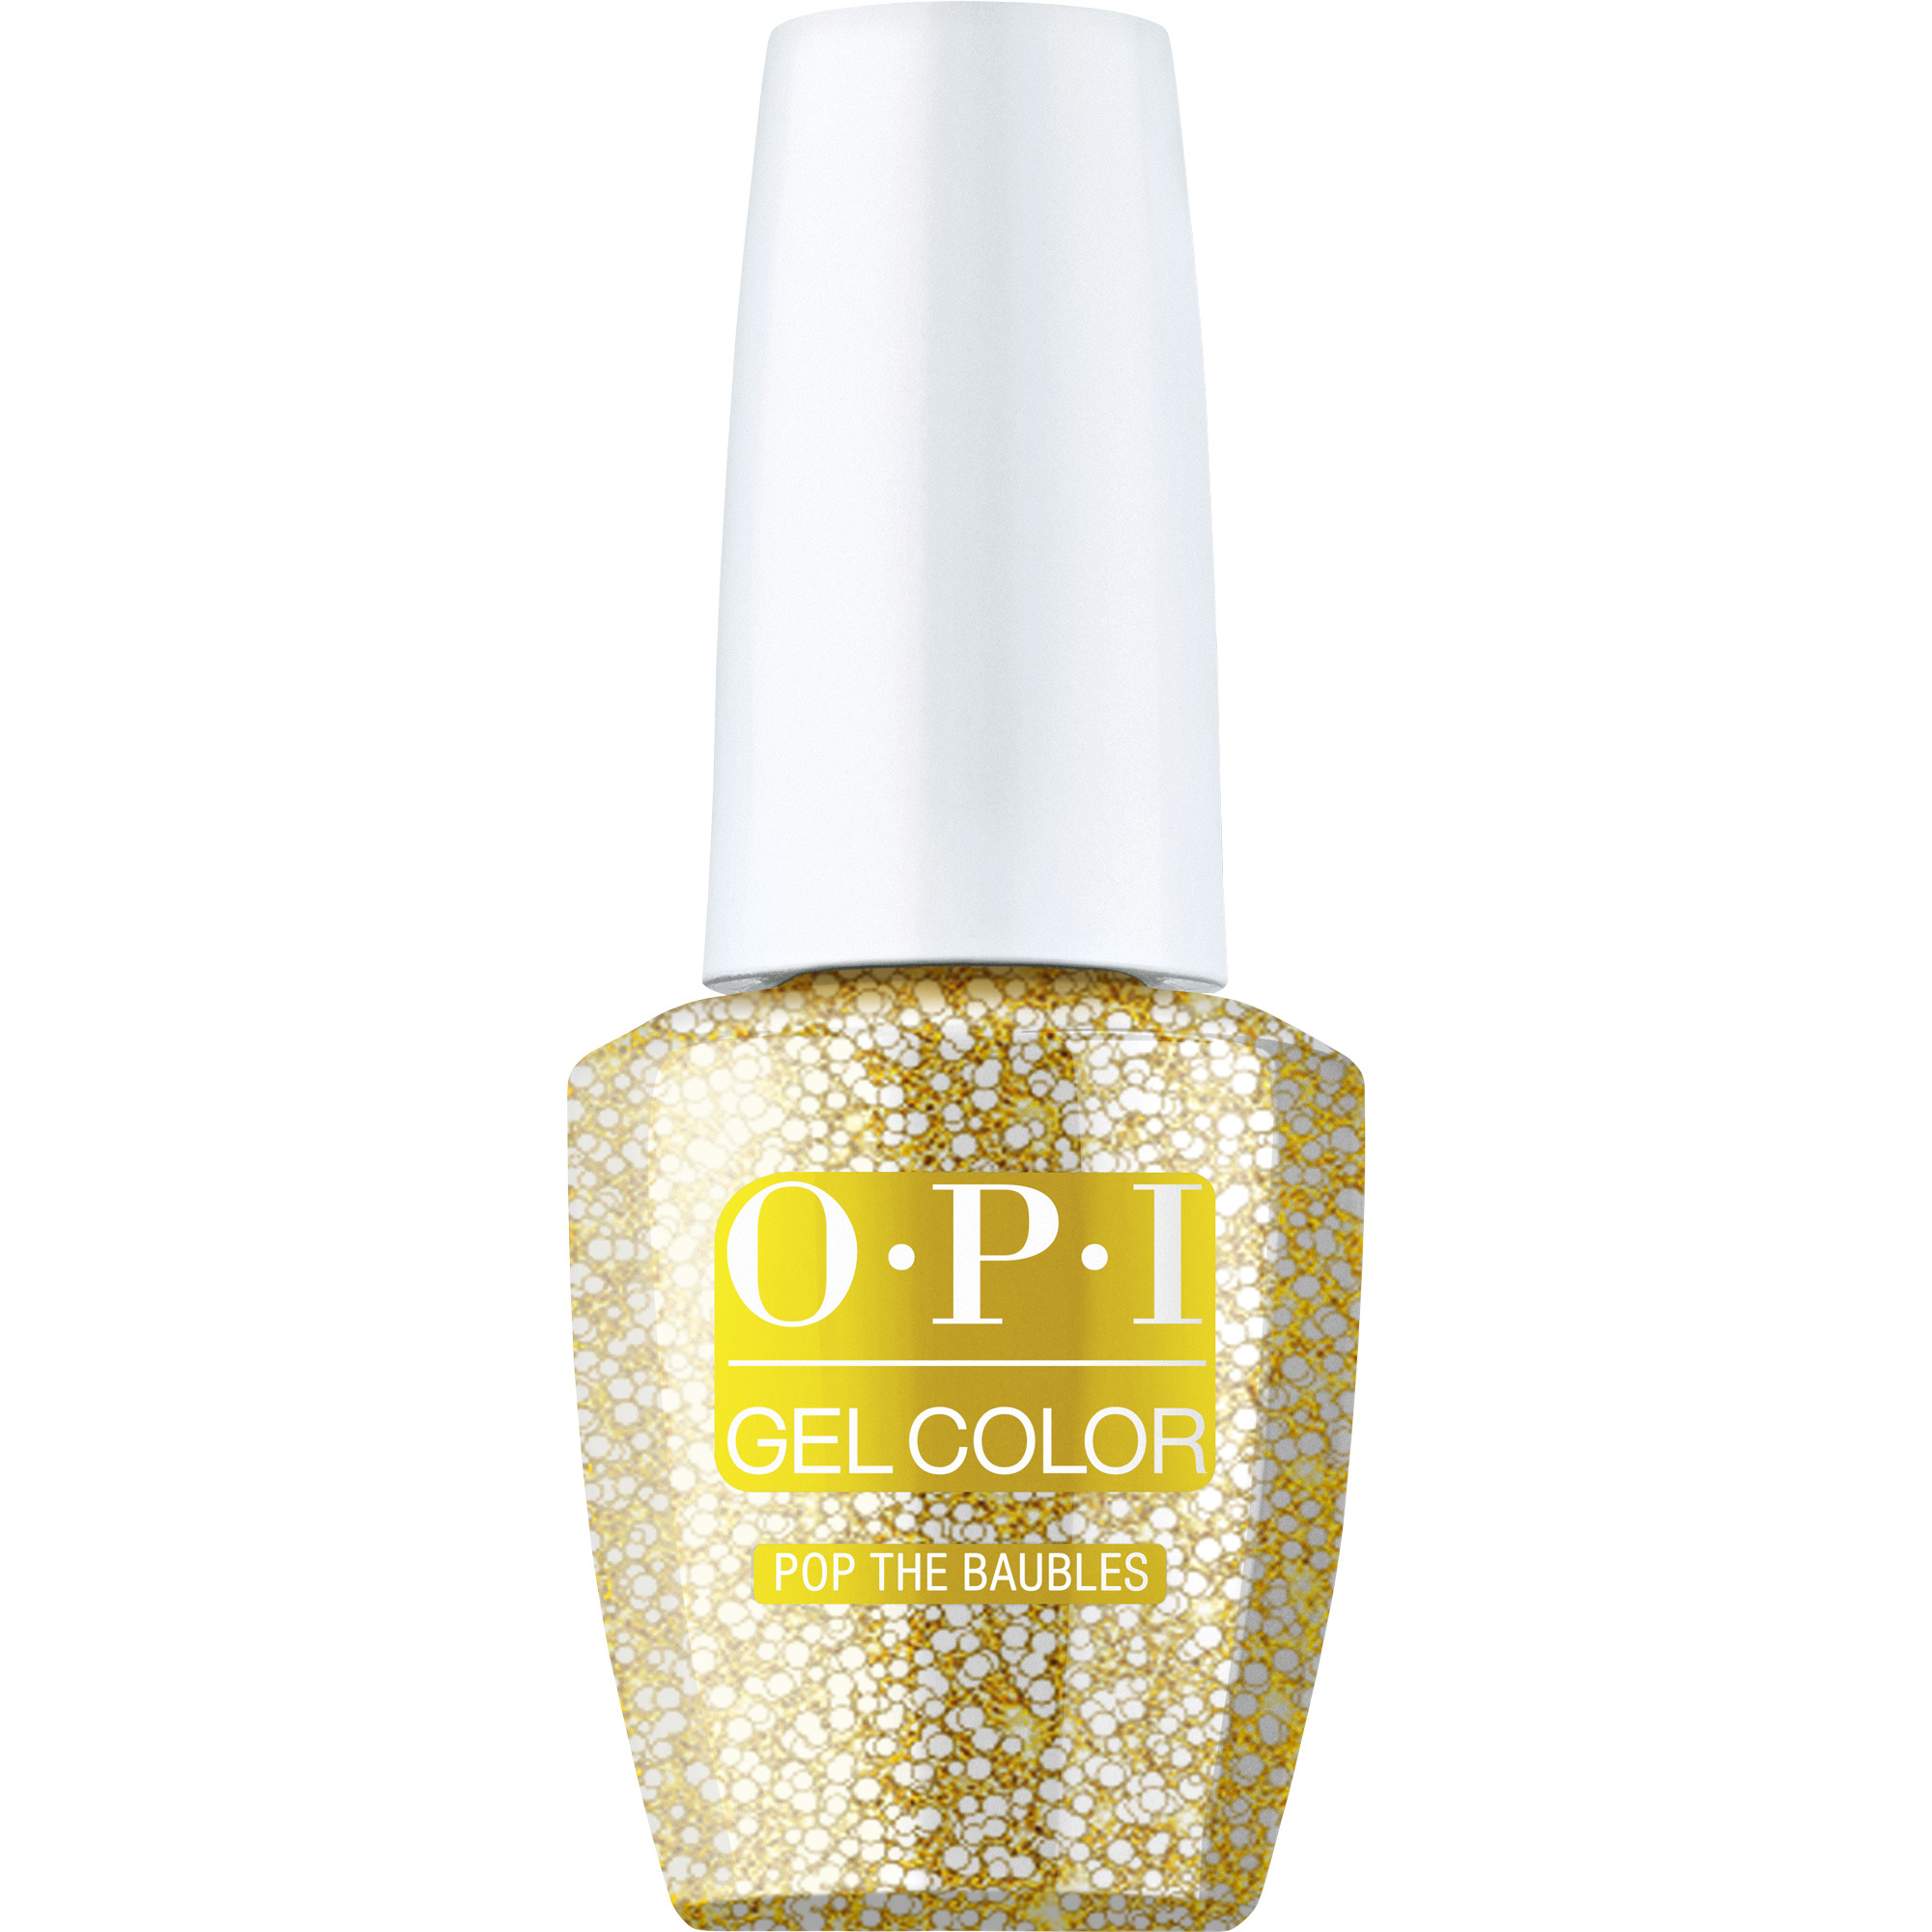 OPI Gel Color 360 - Pop the Baubles